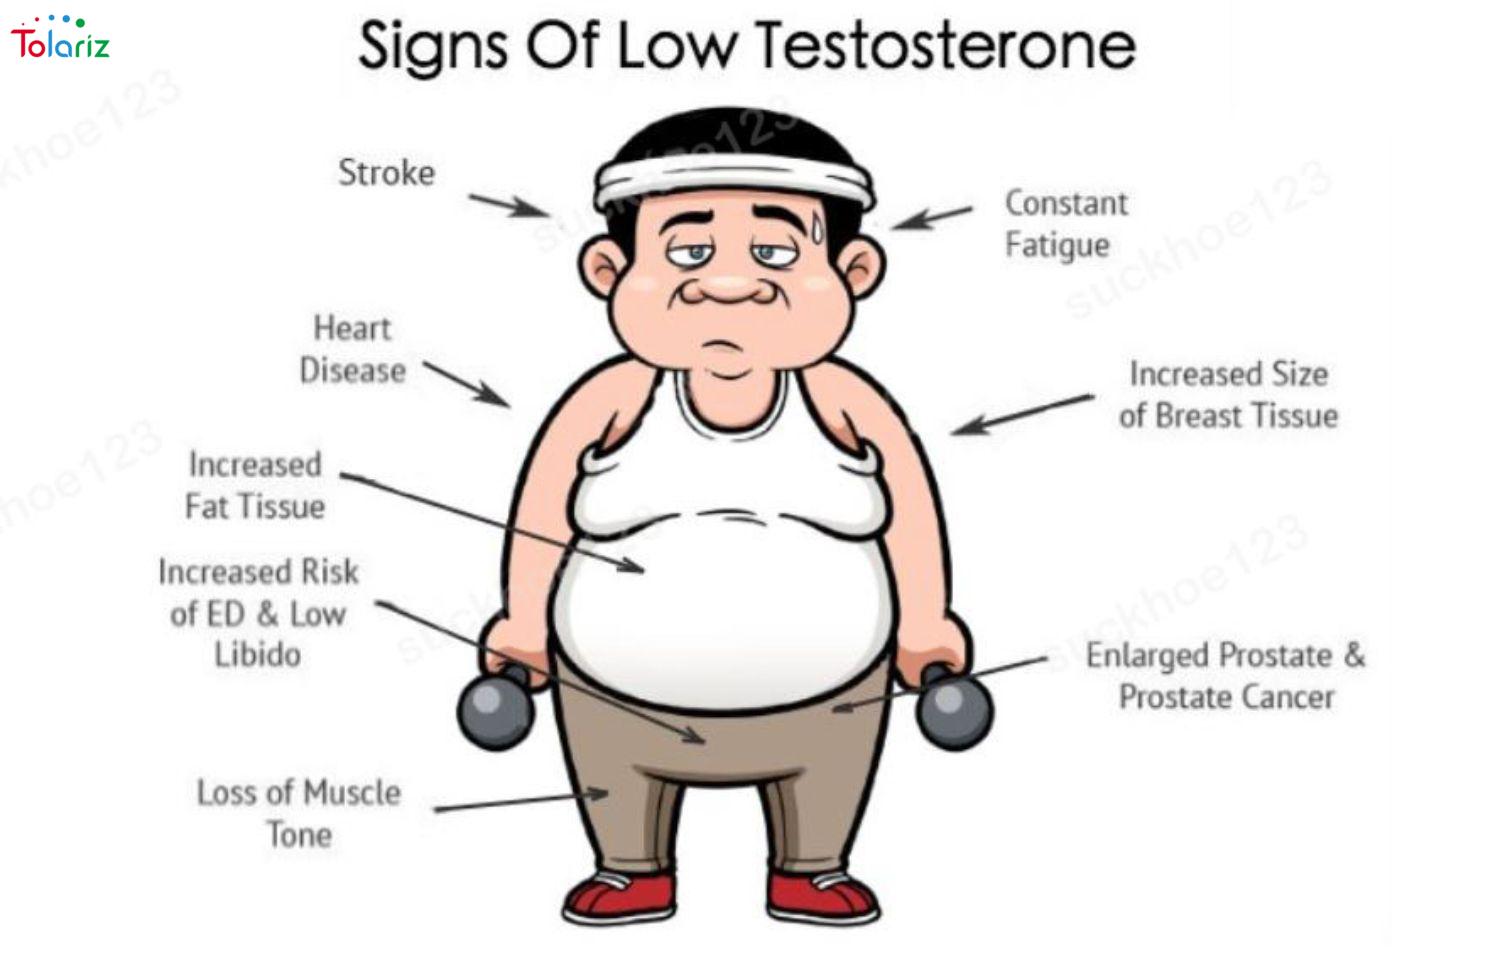 Biểu đồ nồng độ testosterone suy giảm theo lứa tuổi ở phái mạnh bạo